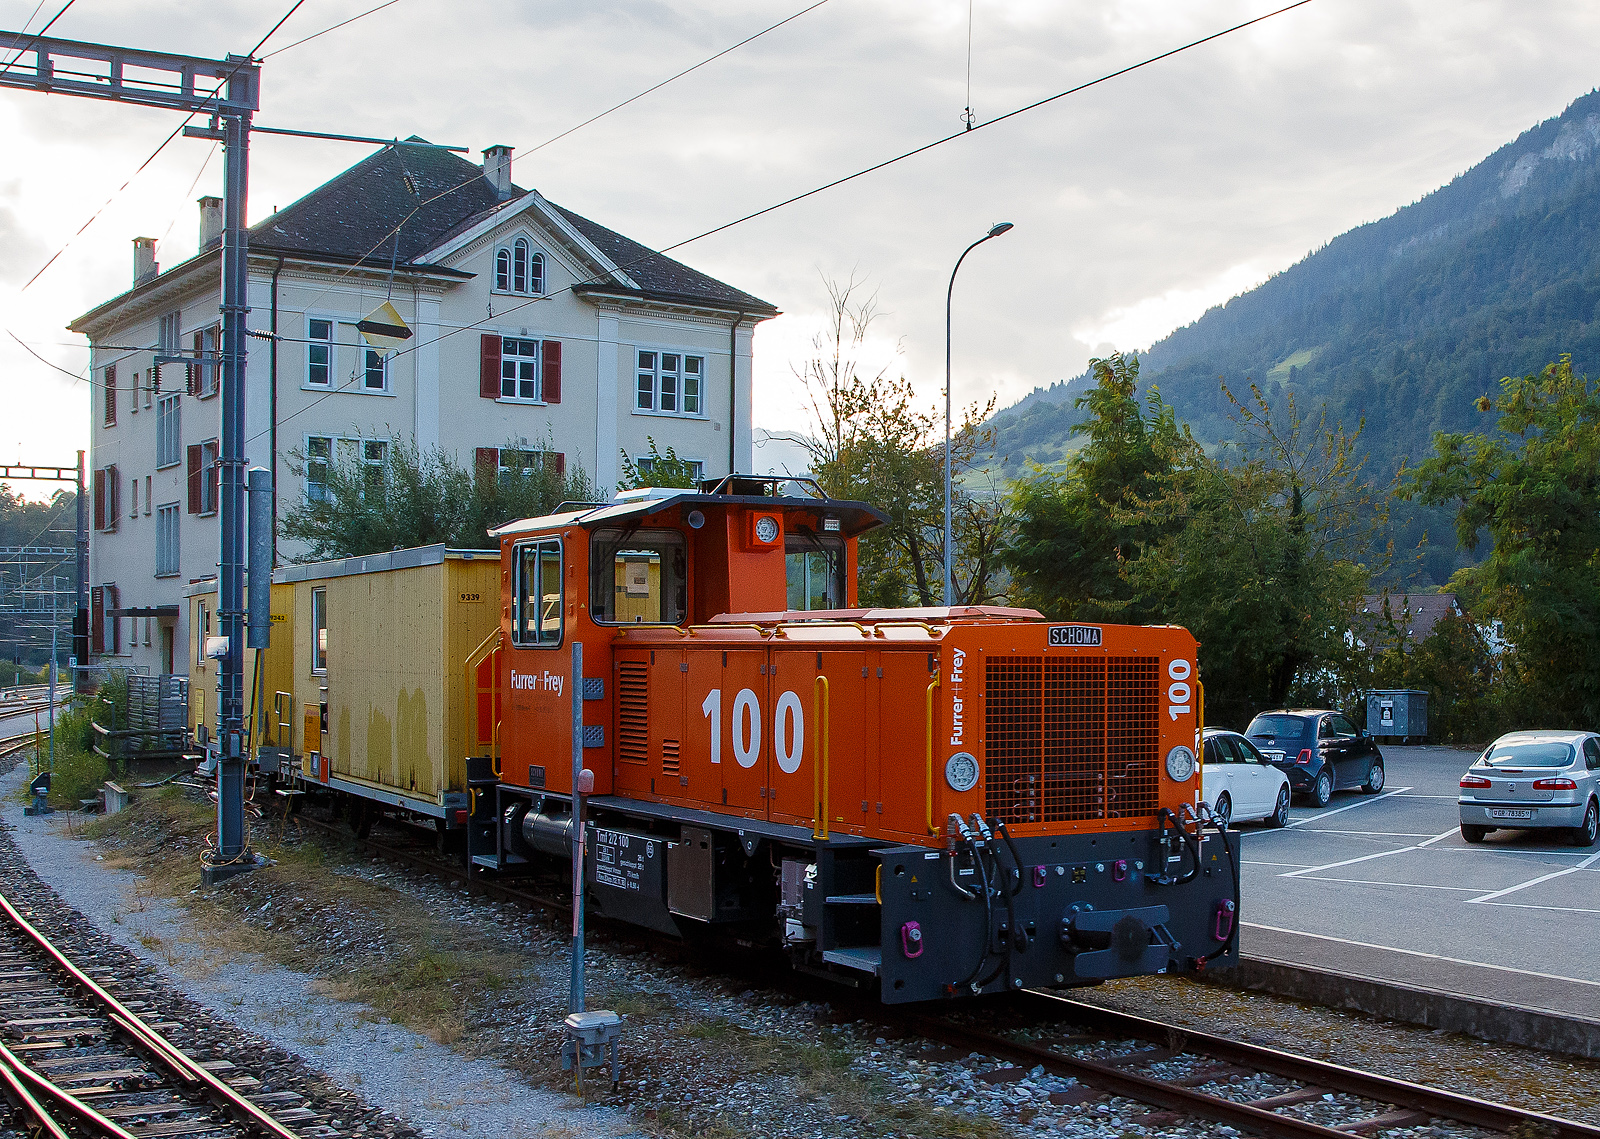 Der Tmf 2/2 100 der Furrer+Frey AG steht am 06.09.2021 beim Bahnhof Reichenau-Tamins (aufgenommen aus dem Zug heraus).

Das Meterspur-Multitalent der Furrer+Frey AG (Bern)...
Kupplungen, Bremssysteme und Zug- und Stossvorrichtungen des neuen Tmf 2/2 mit Funkfernsteuerung erlauben seinen Einsatz auf allen Schweizer Meterspurbahnen.

VIELSEITIG:
Der Schma Tmf 2/2 (100) ist fr den Einsatz auf Steigungen bis 70 Promille geeignet.
Er ist ausgerstet mit Magnetschienenbremse, Vakuumbremse und sowohl 4 bar als auch 5 bar Druckluftbremsen.
Dank verstellbaren Zug- und Stossvorrichtungen und dem Radprofil C kann er auer beim Tram auf allen Schweizer Meterspurbahnen eingesetzt werden.
Auf den Einbau einer Zugsicherung wurde fr dieses Baustellenfahrzeug verzichtet. Die Systeme der Bahnen sind so verschieden, dass sie sich teilweise gegenseitig ausschlieen.

Die Meterspur-Lok vom Typ SCHMA CFL 250 BCL-R wurde 2018 von SCHMA (Christoph Schttler Maschinenfabrik GmbH) in Diepholz unter der Fabriknummer 7007 gebaut, am 07.11.2018 erfolgte die Auslieferung an die Furrer + Frey AG, Bern [CH]  als Tmf 100. Auch wenn sie nur als Tmf 100 gefhrt wird hat sie die UIC-Nummer 99 85 8290 100-9 CH-FFAG.

TECHNISCHE DATEN:
Baujahr: 2018
Spurweite: 1.000 mm (Meterspur)
Achsfolge: B
Lnge ber Puffer (abh. V. installierten Kupplungstyp): GFN - 8.870 mm / ZP1 - 8.470 mm / ZP2 - 8.340 mm
Achsabstand: 3.750 mm
Triebraddurchmesser 850 mm.
Achsabstand 3.750 mm.
Breite 2.670 mm
Hhe 3.650 mm
Breite: 2 700 mm
Eigengewicht:  28,0 t
Hchstgeschwindigkeit: 65 km/h (75 km/h Schleppfahrt)
Dieselmotor: Wassergekhlter Caterpillar  6-Zylinder-Reihen-Viertakt-Dieselmotor mit Turboaufladung vom Typ CAT C13 ACERT
Motorleistung: 354 kW (481PS)
Motor Hubraum: 12,5 l (Bohrung 130 mm x Hub 157 mm)
Retarder:  Voith VR 120-3 
Lastschaltgetriebe: DANA 8422H-257, 4 Gnge fr jede Fahrtrichtung
Bedienung: aus Fhrerstand und/oder Funkfernsteuerung
Steigung / Geflle: Zugelassen fr den Betrieb bis 70 ‰
Bremse: Druckluftbremse (4 oder 5 bar) und Vakuumbremse
Anhngelasten: berfhrungsbetrieb Bau- und Manverbetrieb
bis 10 ‰ 130 t bei 40 km/h max. 350 t bei 15 km/h
bis 15 ‰ 95 t bei 40 km/h max. 325 t bei 10 km/h
bis 20 ‰ 70 t bei 40 km/h max. 250 t bei 10 km/h
bis 30 ‰ 40 t bei 40 km/h max. 170 t bei 10 km/h
bis 40 ‰ 35 t bei 40 km/h max. 125 t bei 10 km/h
bis 50 ‰ 22 t bei 30 km/h max. 95 t bei 10 km/h
bis 60 ‰ 18 t bei 30 km/h max. 75 t bei 10 km/h
bis 70 ‰ 10 t bei 30 km/h max. 60 t bei 10 km/h

Bemerkungen: Das Fahrzeug ist mit einem Partikelfilter ausgerstet.
Transport auf LKW-Tiefgnger, Eigenfahrt oder Verlad auf Bahnwagen.
Auf- und Ablad mit Kran, Anschlagmittel teils vorhanden. 
Ausgerstet mit Radprofil C, welches Einstze auf allen Meterspurbahnen in der Schweiz erlaubt.
Es knnen alle in der Schweiz vorkommenden Typen von Zug- und Stovorrichtungen, mit unterschiedlichen Hhen, montiert werden (GFN, ZP1 und ZP2).
Zulassung: Schweiz: Meterspur (ohne Meterspur Tram)

Quelle: Furrer + Frey AG
